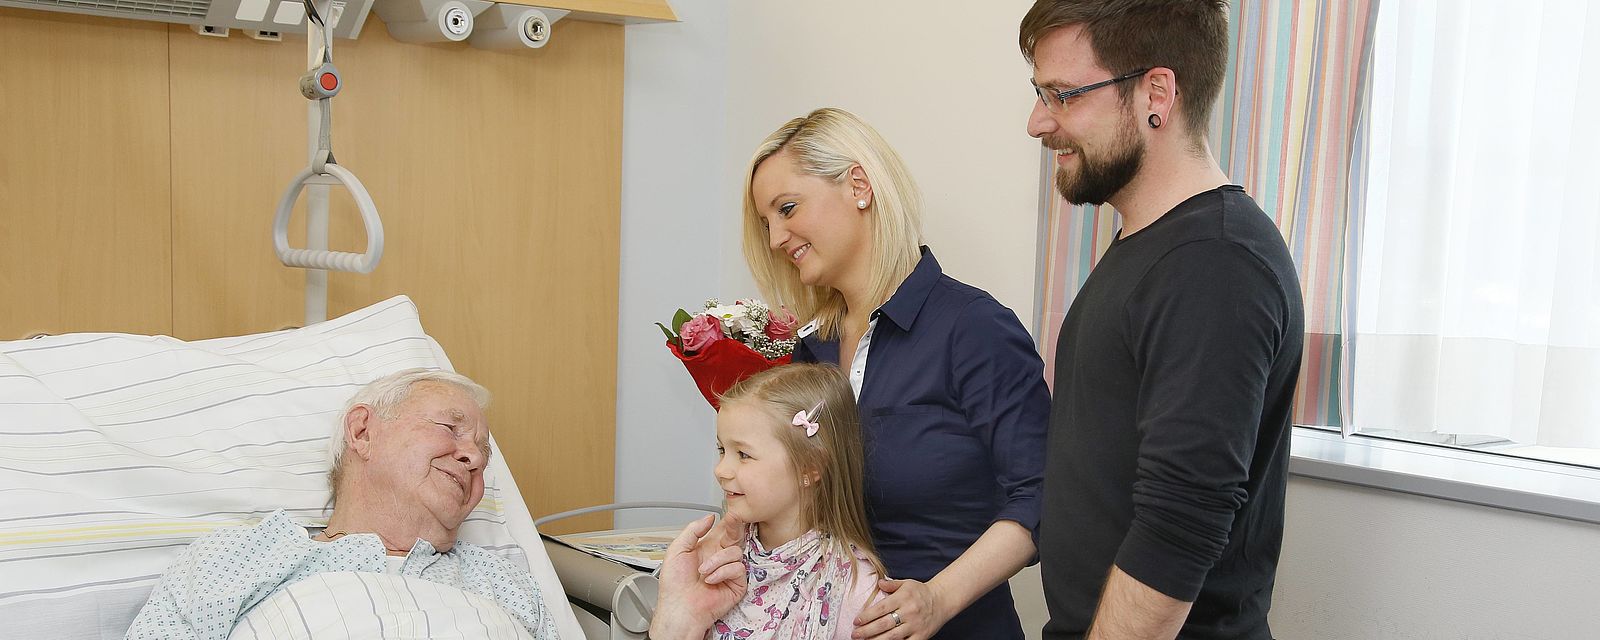 Eltern mit Kind besuchen kranken Großvater im Spital